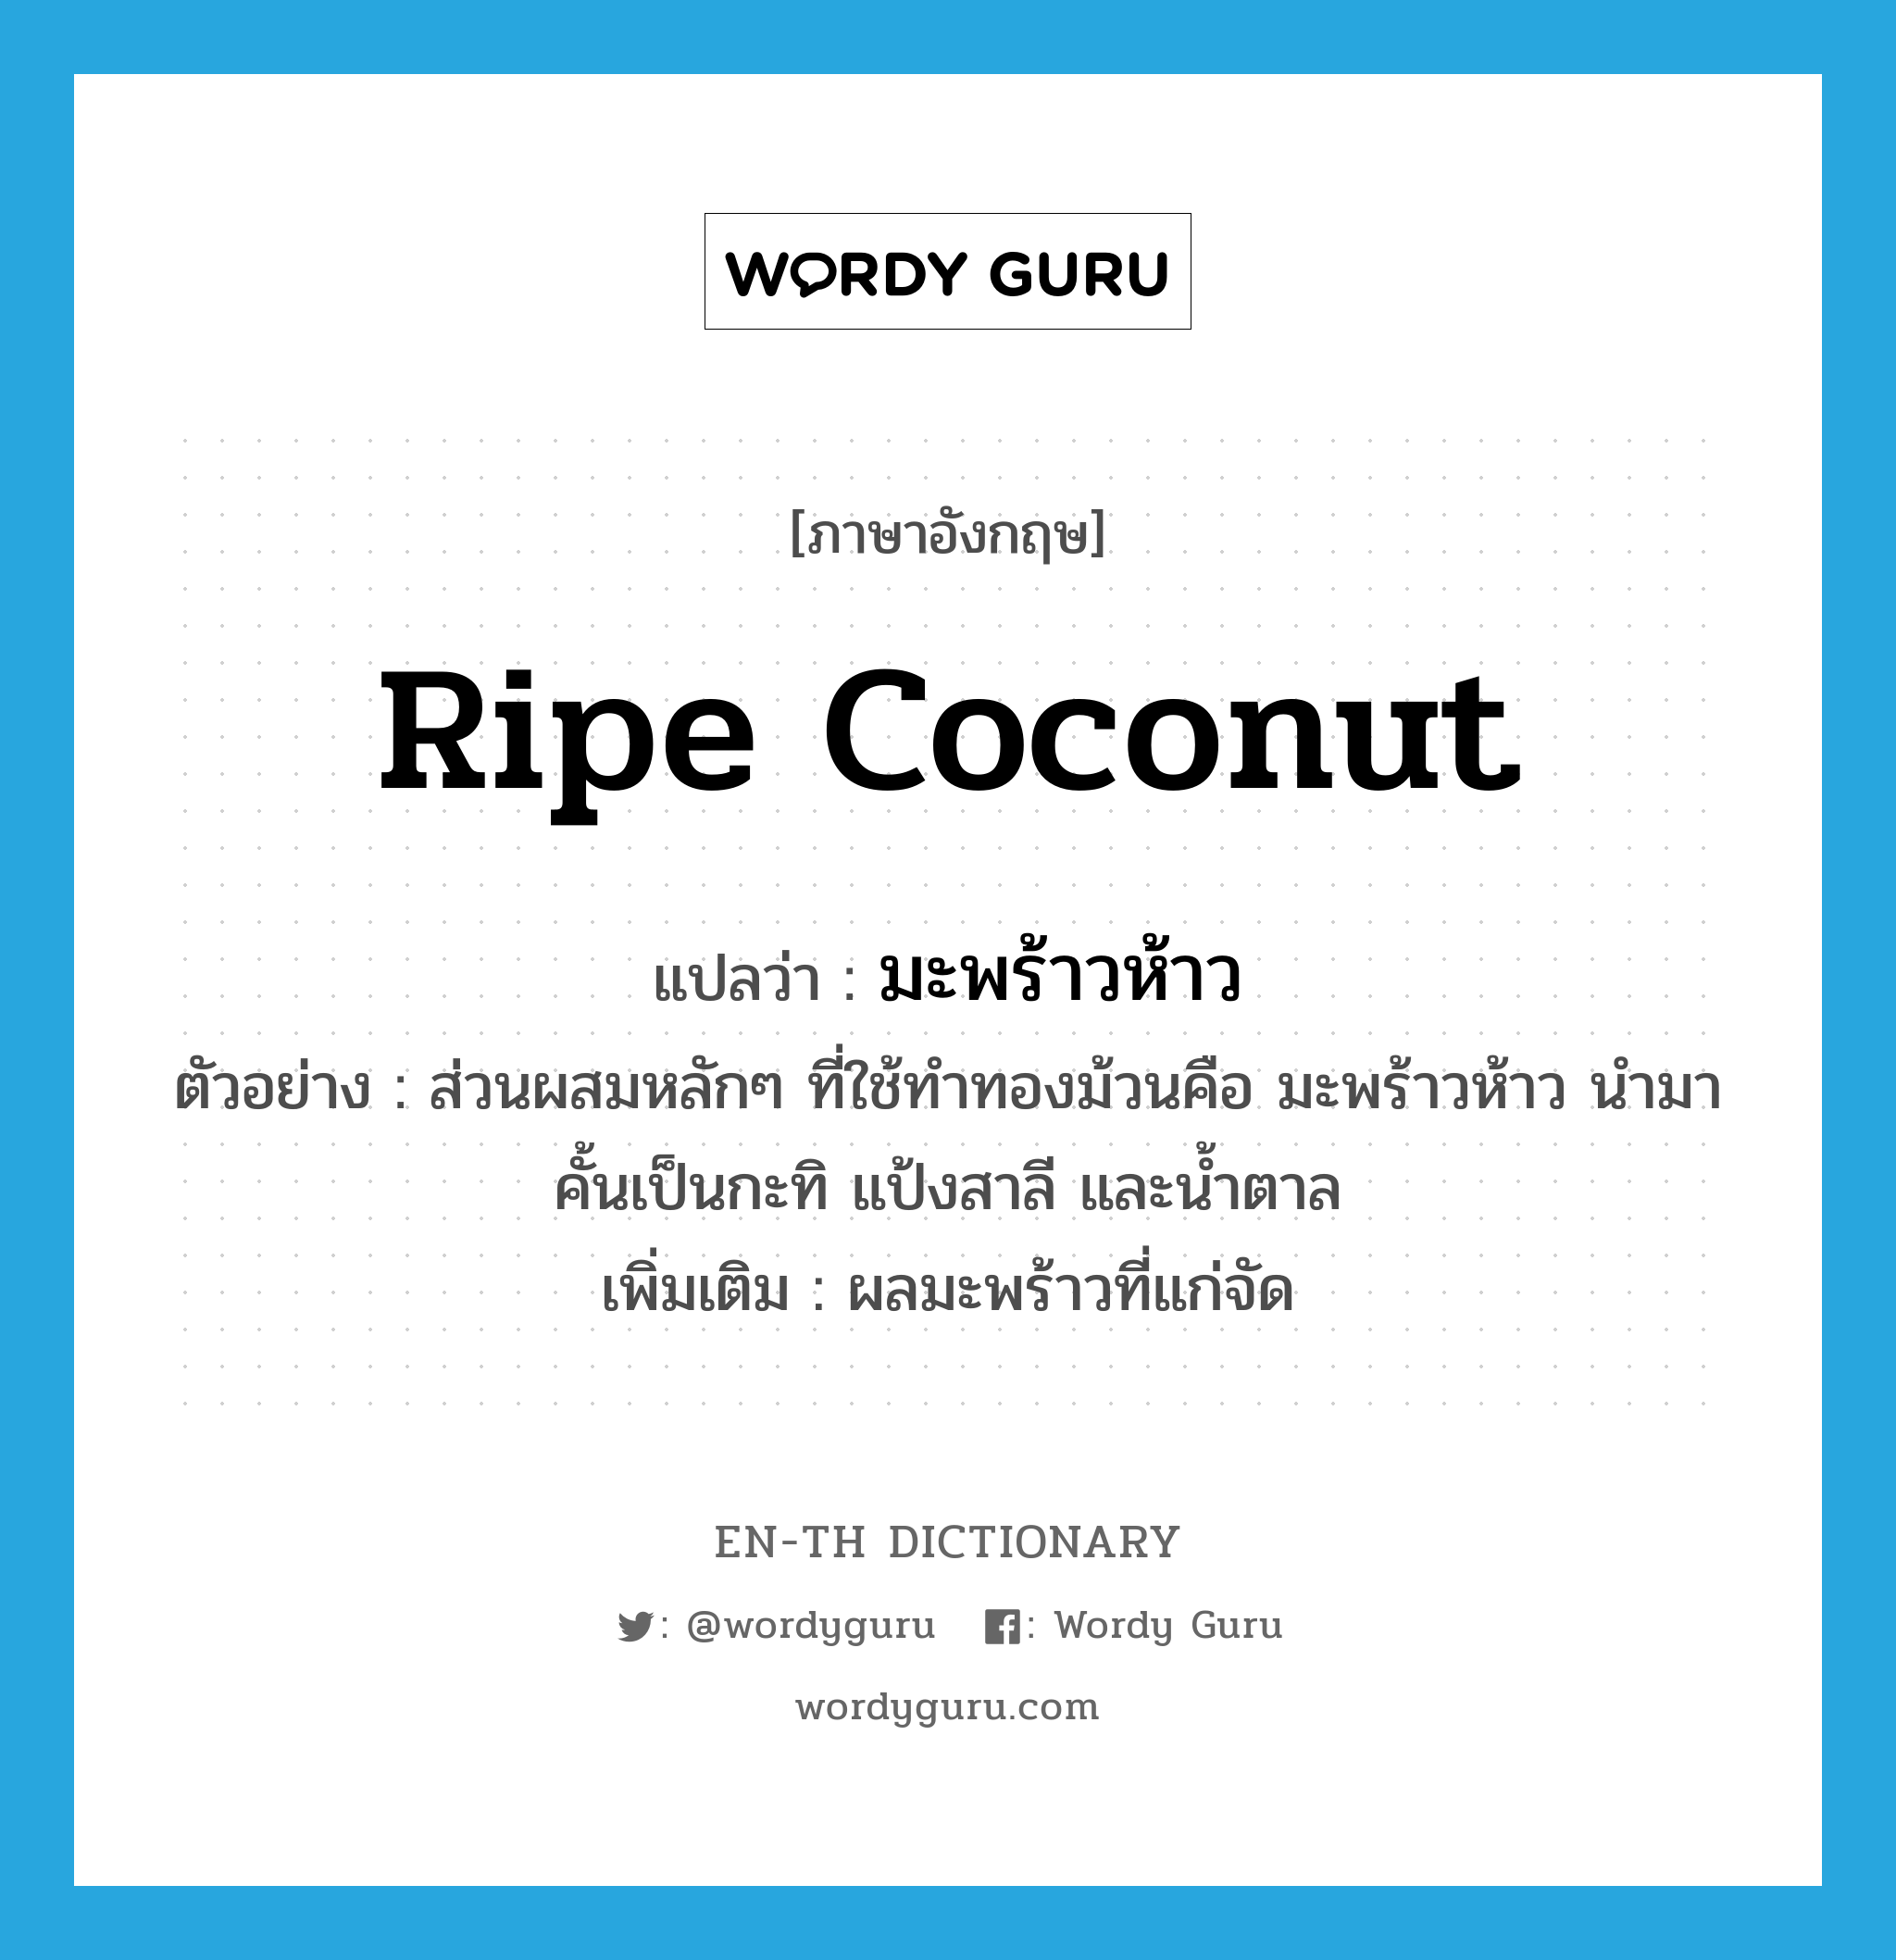 ripe coconut แปลว่า?, คำศัพท์ภาษาอังกฤษ ripe coconut แปลว่า มะพร้าวห้าว ประเภท N ตัวอย่าง ส่วนผสมหลักๆ ที่ใช้ทำทองม้วนคือ มะพร้าวห้าว นำมาคั้นเป็นกะทิ แป้งสาลี และน้ำตาล เพิ่มเติม ผลมะพร้าวที่แก่จัด หมวด N